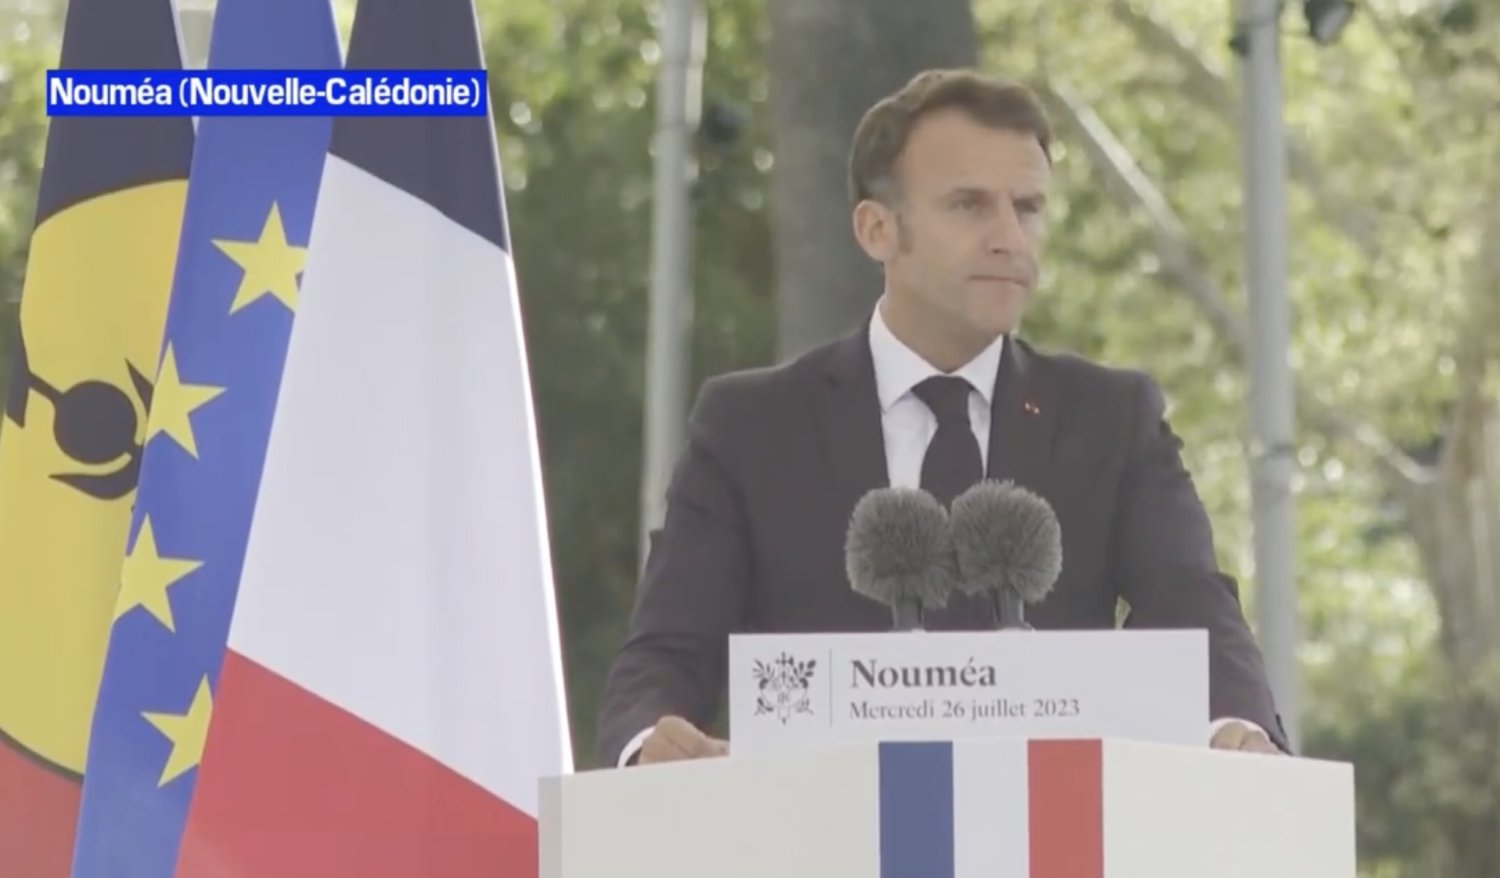 « La Nouvelle-Calédonie est française » : Macron multiplie les provocations et avance son projet néocolonial